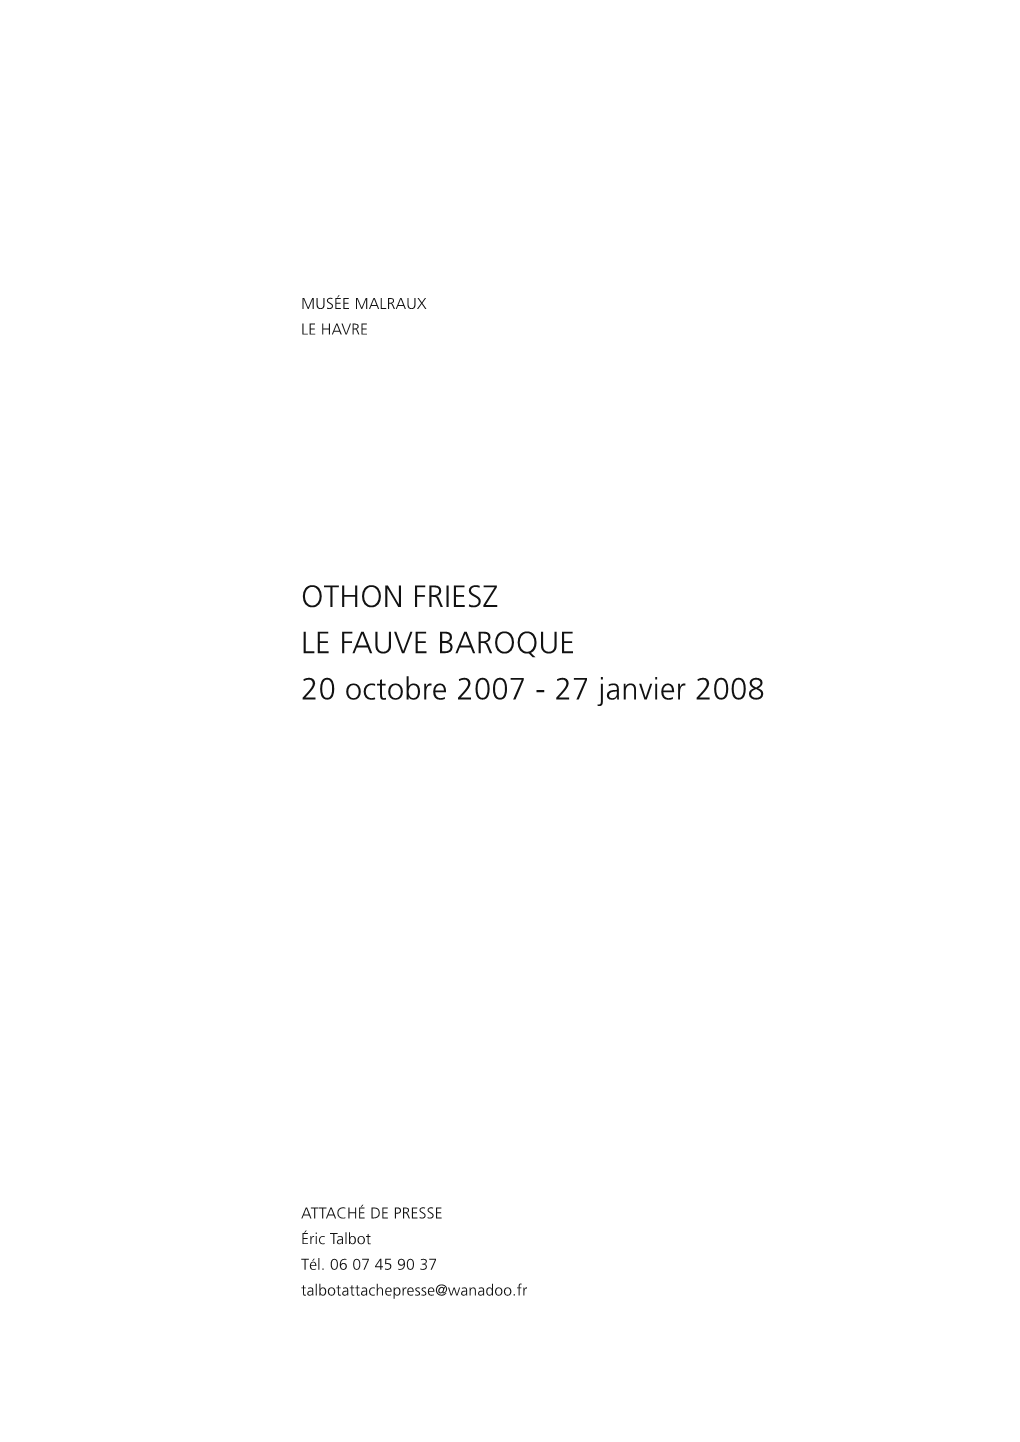 Othon Friesz. Le Fauve Baroque